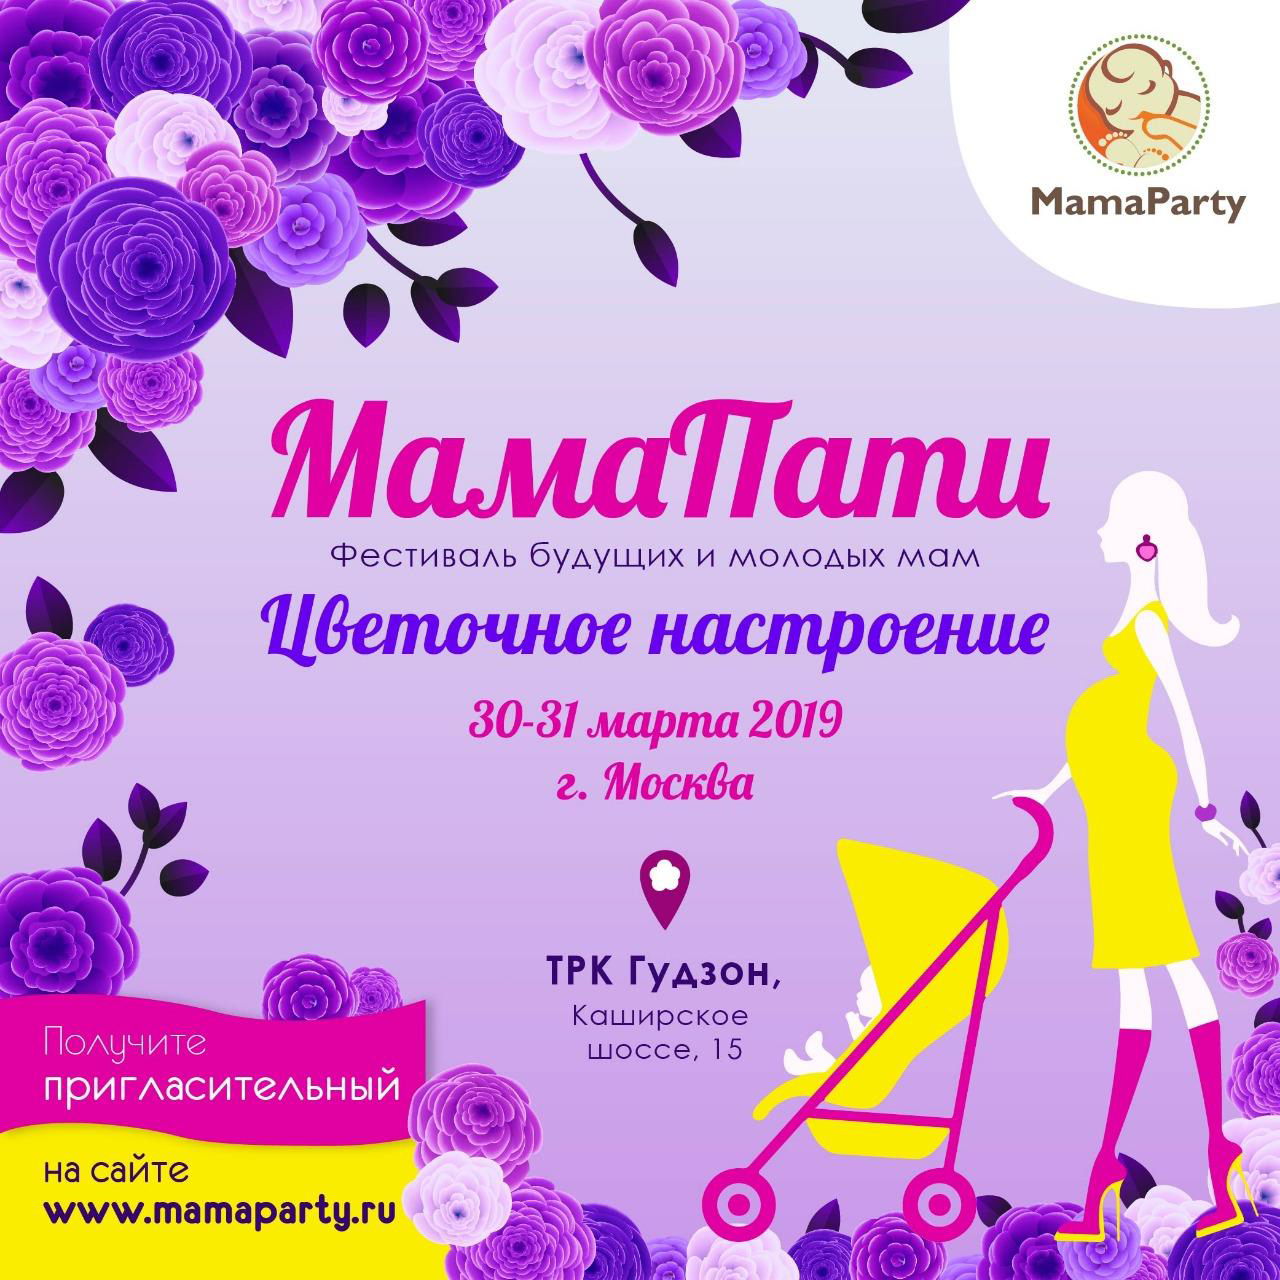 Фестиваль MamaParty, Москва